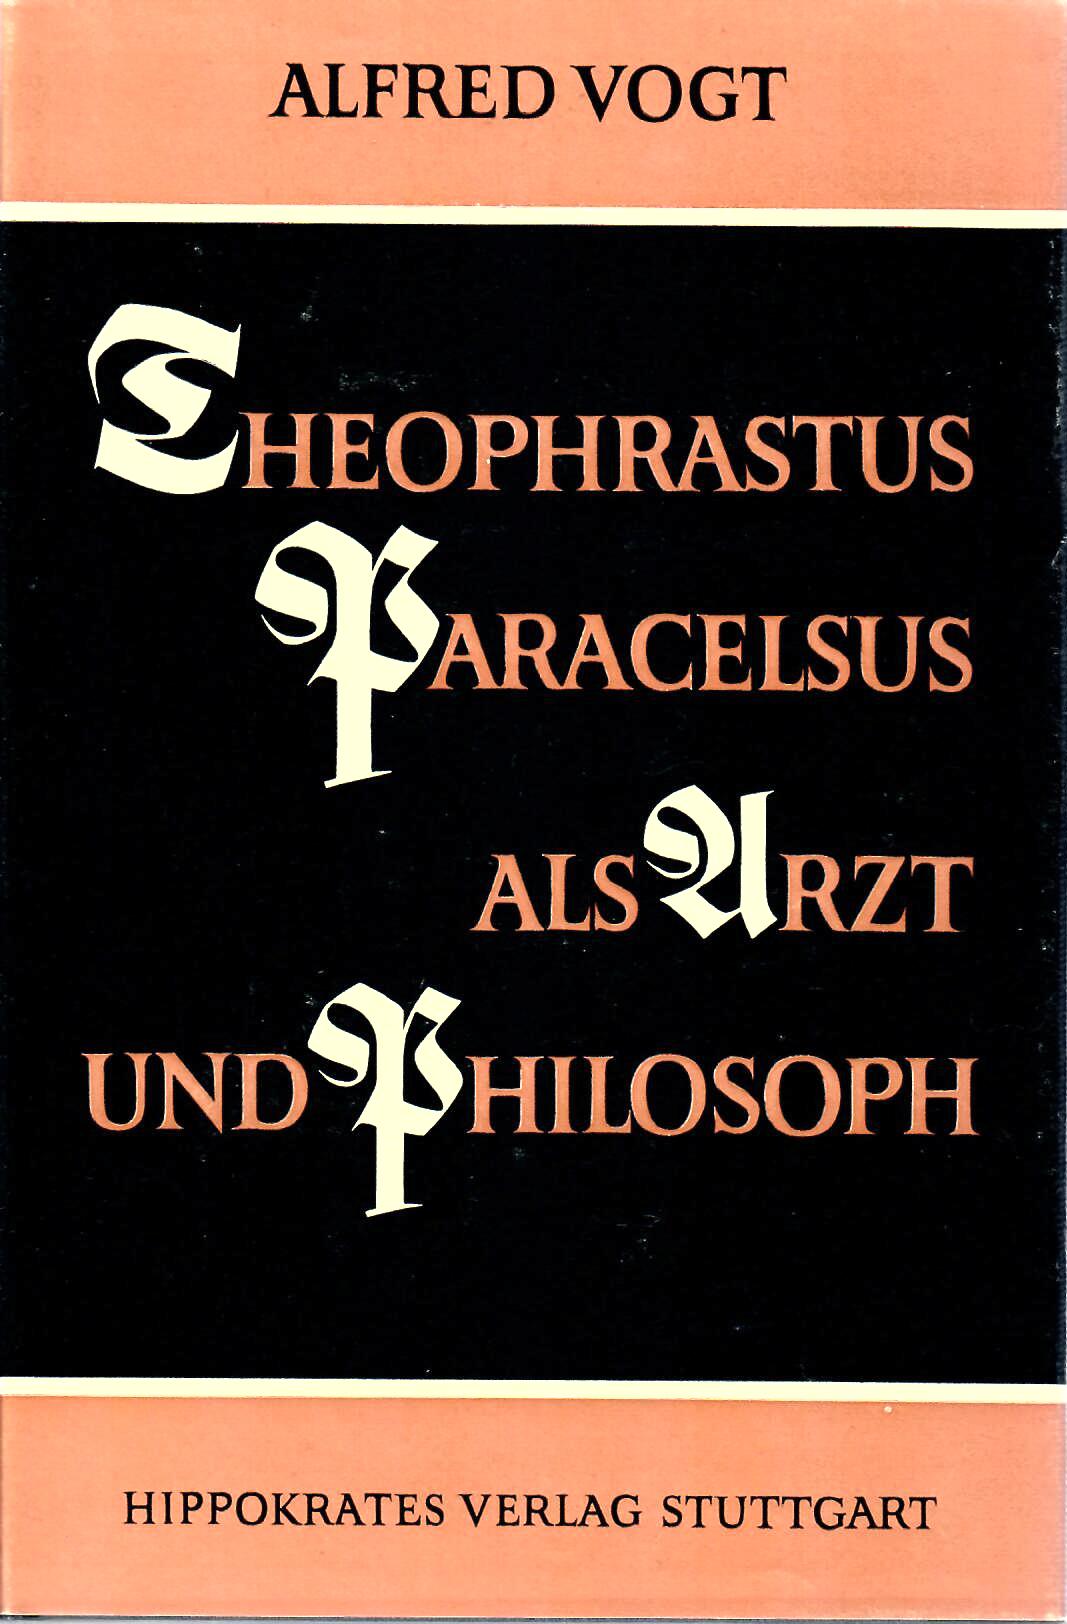 Vogt, Alfred   : Theophrastus Paracelsus als Arzt und Philosoph : Hippokrates Verlag Stuttgart 1956 erste Auflage :